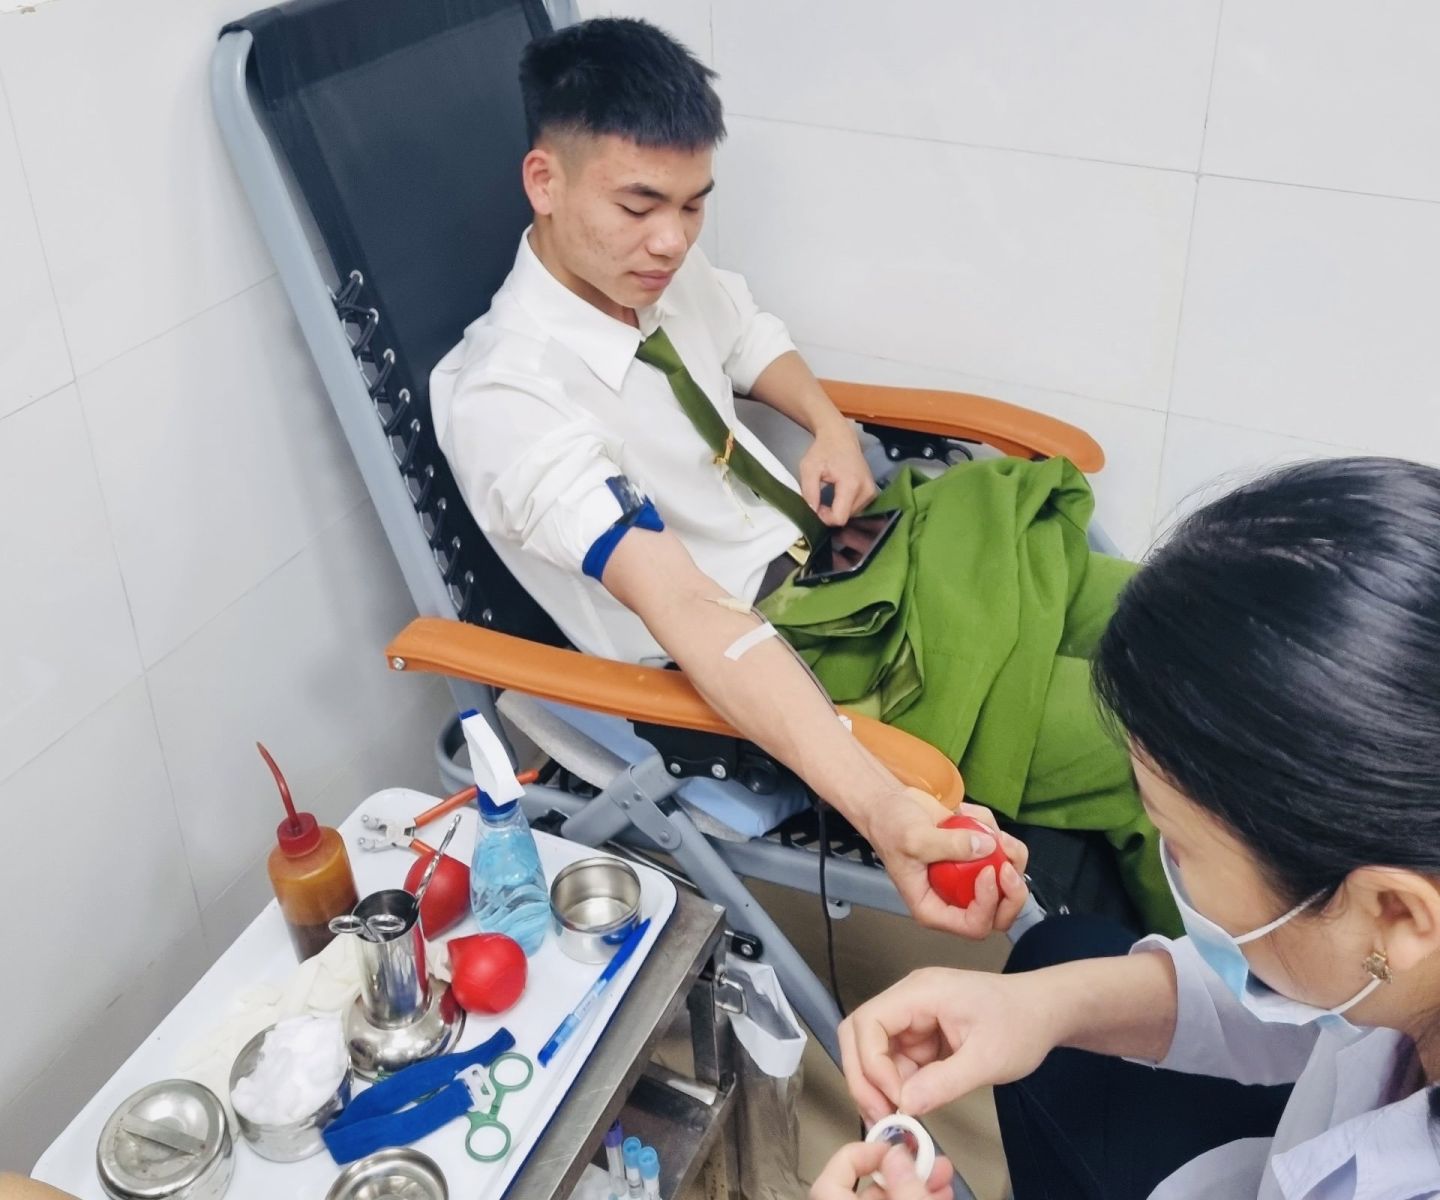 Chiến sĩ Trần Văn Tuấn hiến máu giúp sản phụ qua cơn nguy kịch